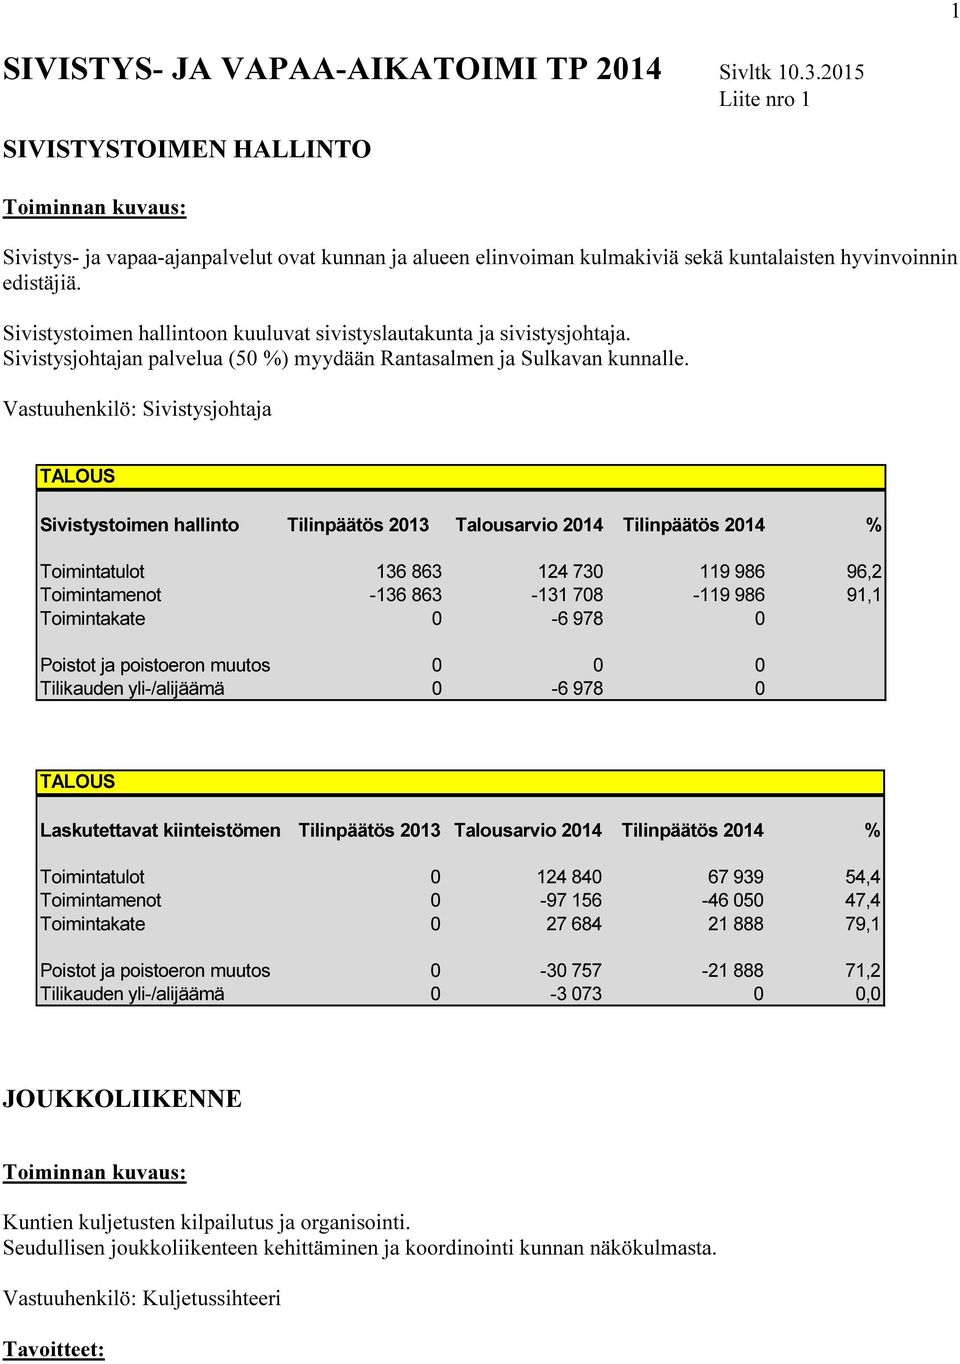 Sivistystoimen hallintoon kuuluvat sivistyslautakunta ja sivistysjohtaja. Sivistysjohtajan palvelua (50 %) myydään Rantasalmen ja Sulkavan kunnalle.